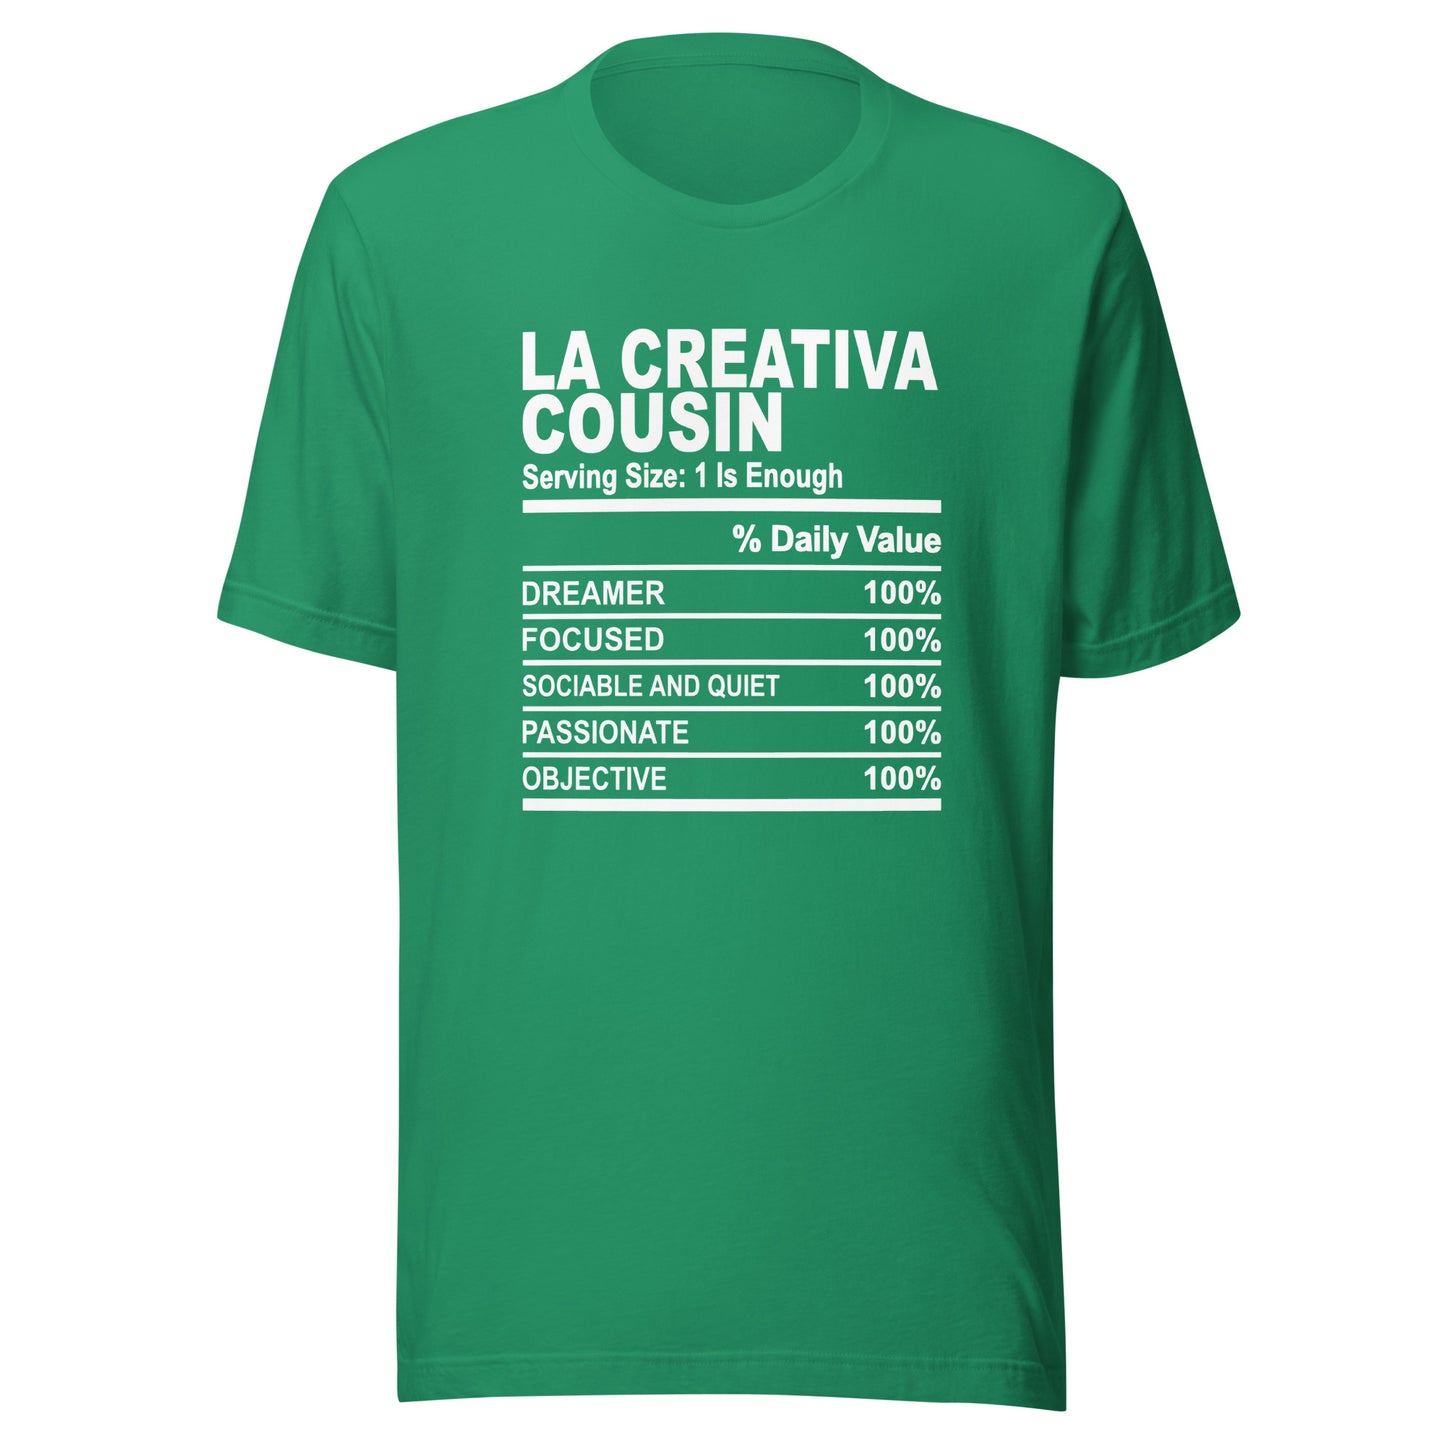 THE LA CREATIVA COUSIN - S-M - Unisex T-Shirt (white print)